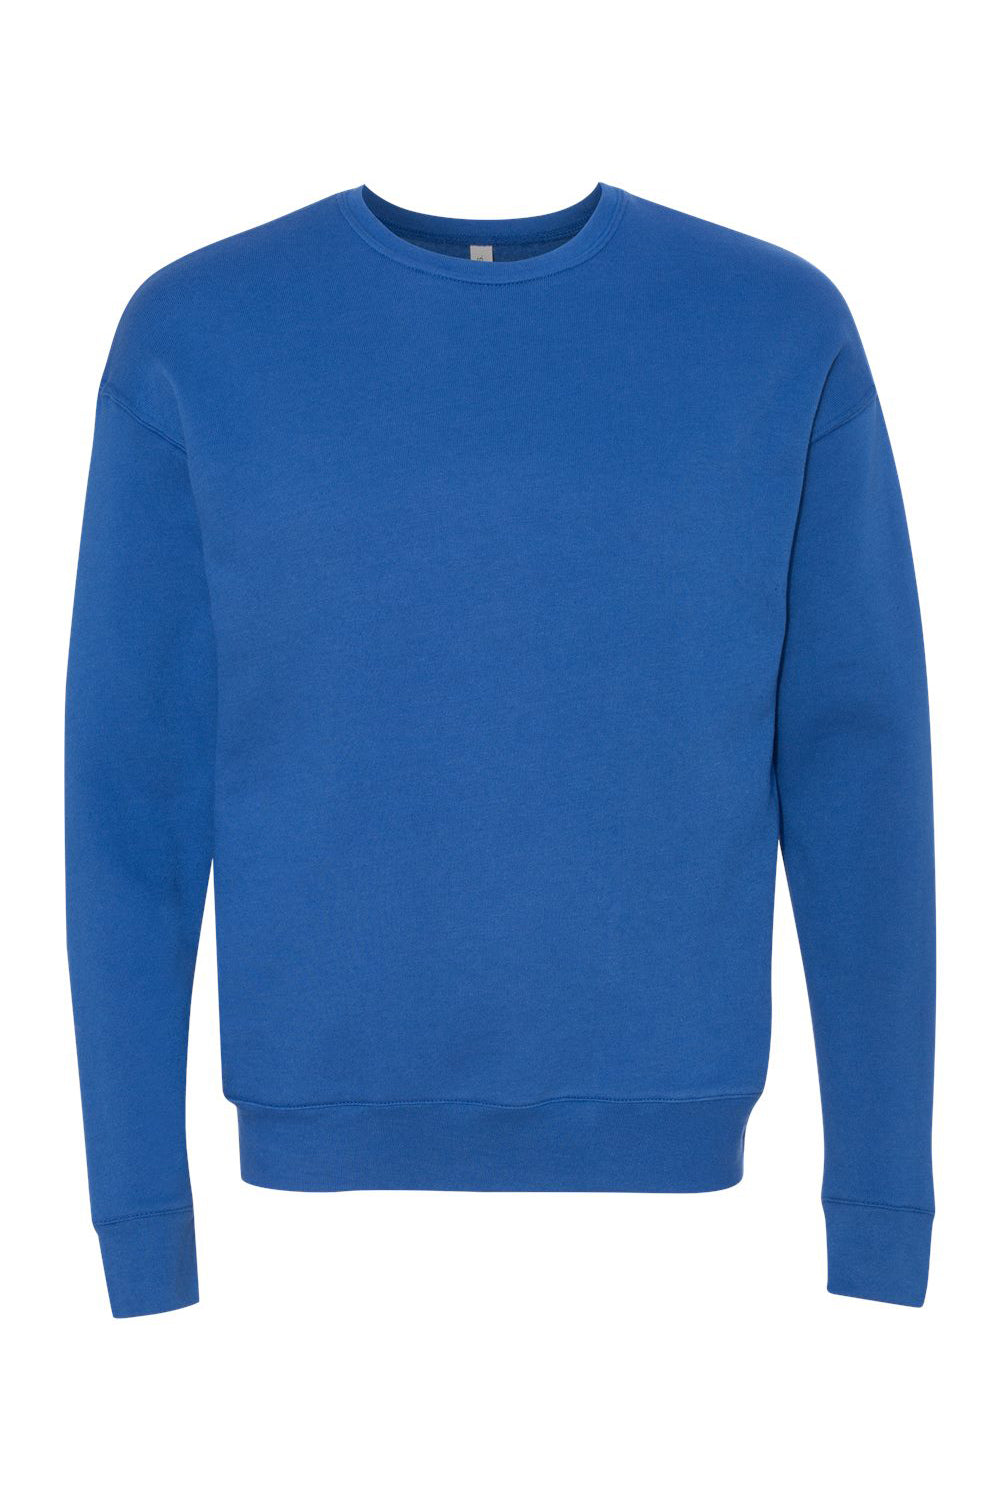 Bella + Canvas BC3945/3945 Mens Fleece Crewneck Sweatshirt True Royal Blue Flat Front